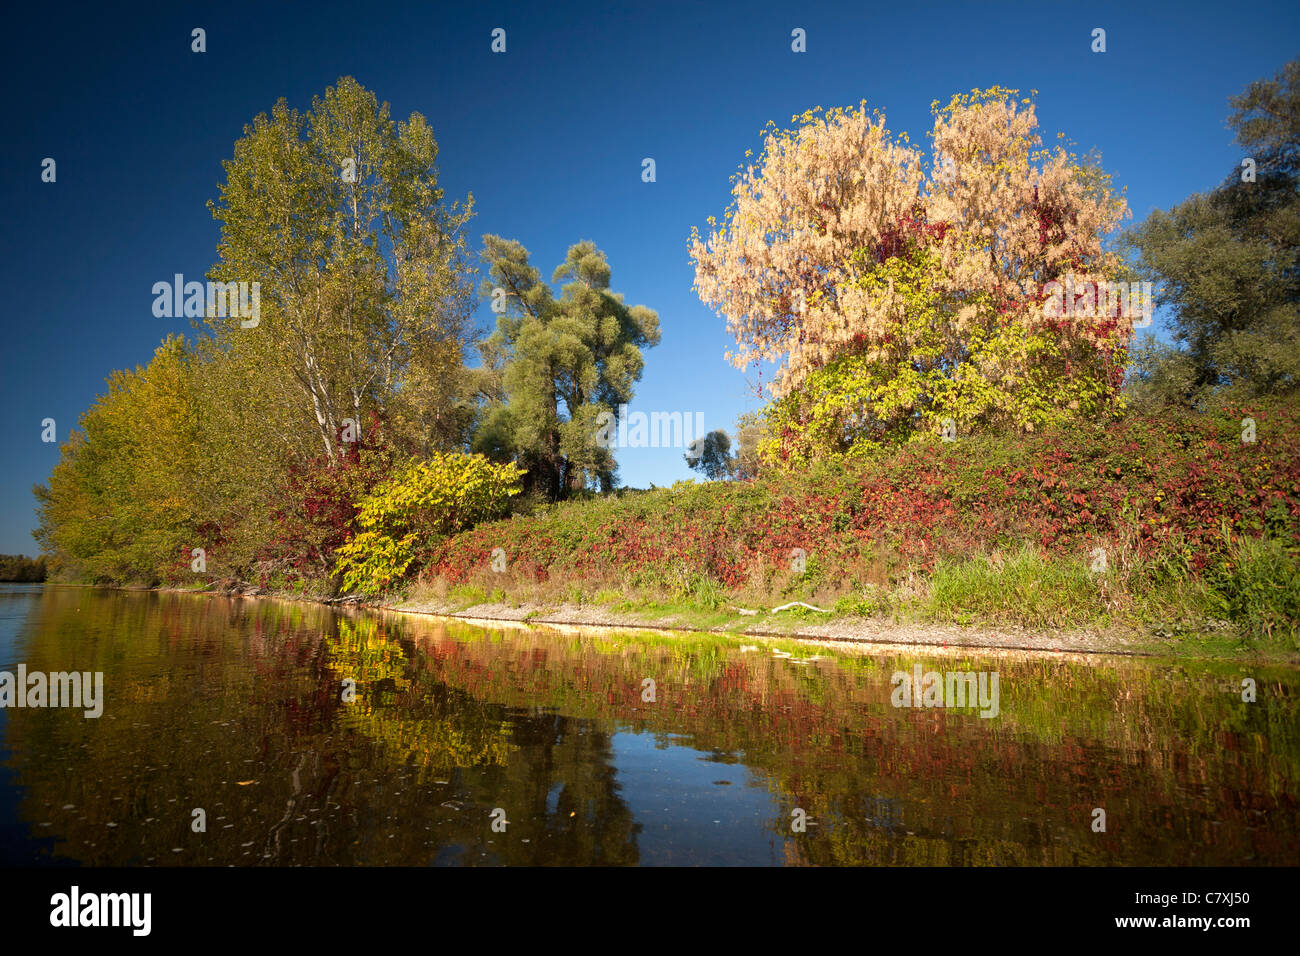 Im Herbst, die Anliegerstaaten Zone von den Ufern des Allier Flusses (Frankreich). Auf der rechten Seite des Fotos sieht man ein Acer Negundo. Stockfoto